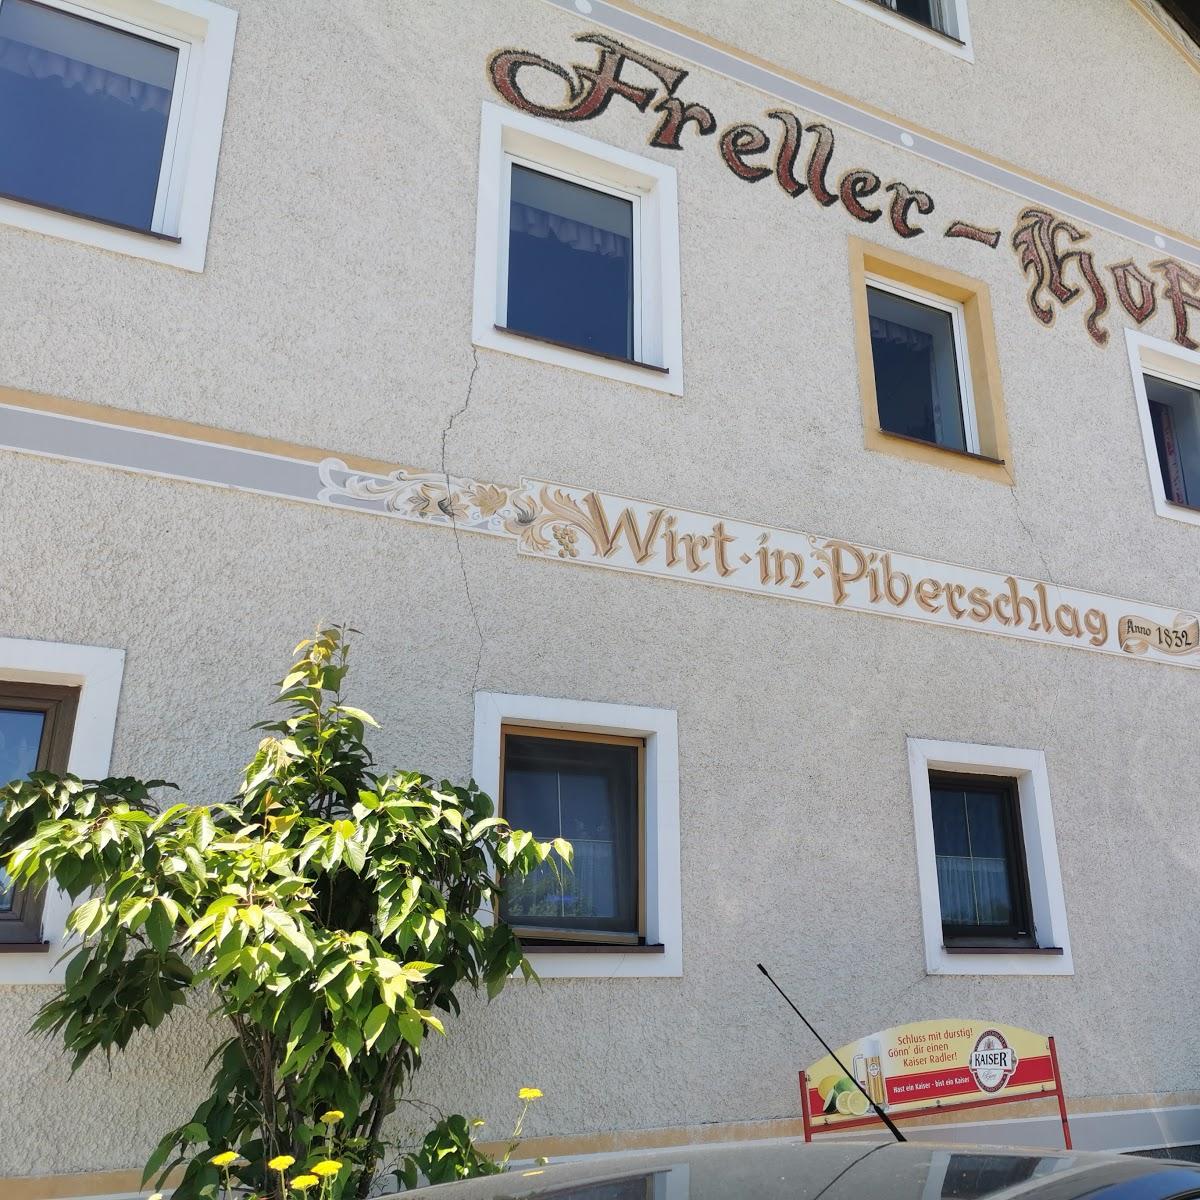 Restaurant "Gasthaus Frellerhof" in Piberschlag